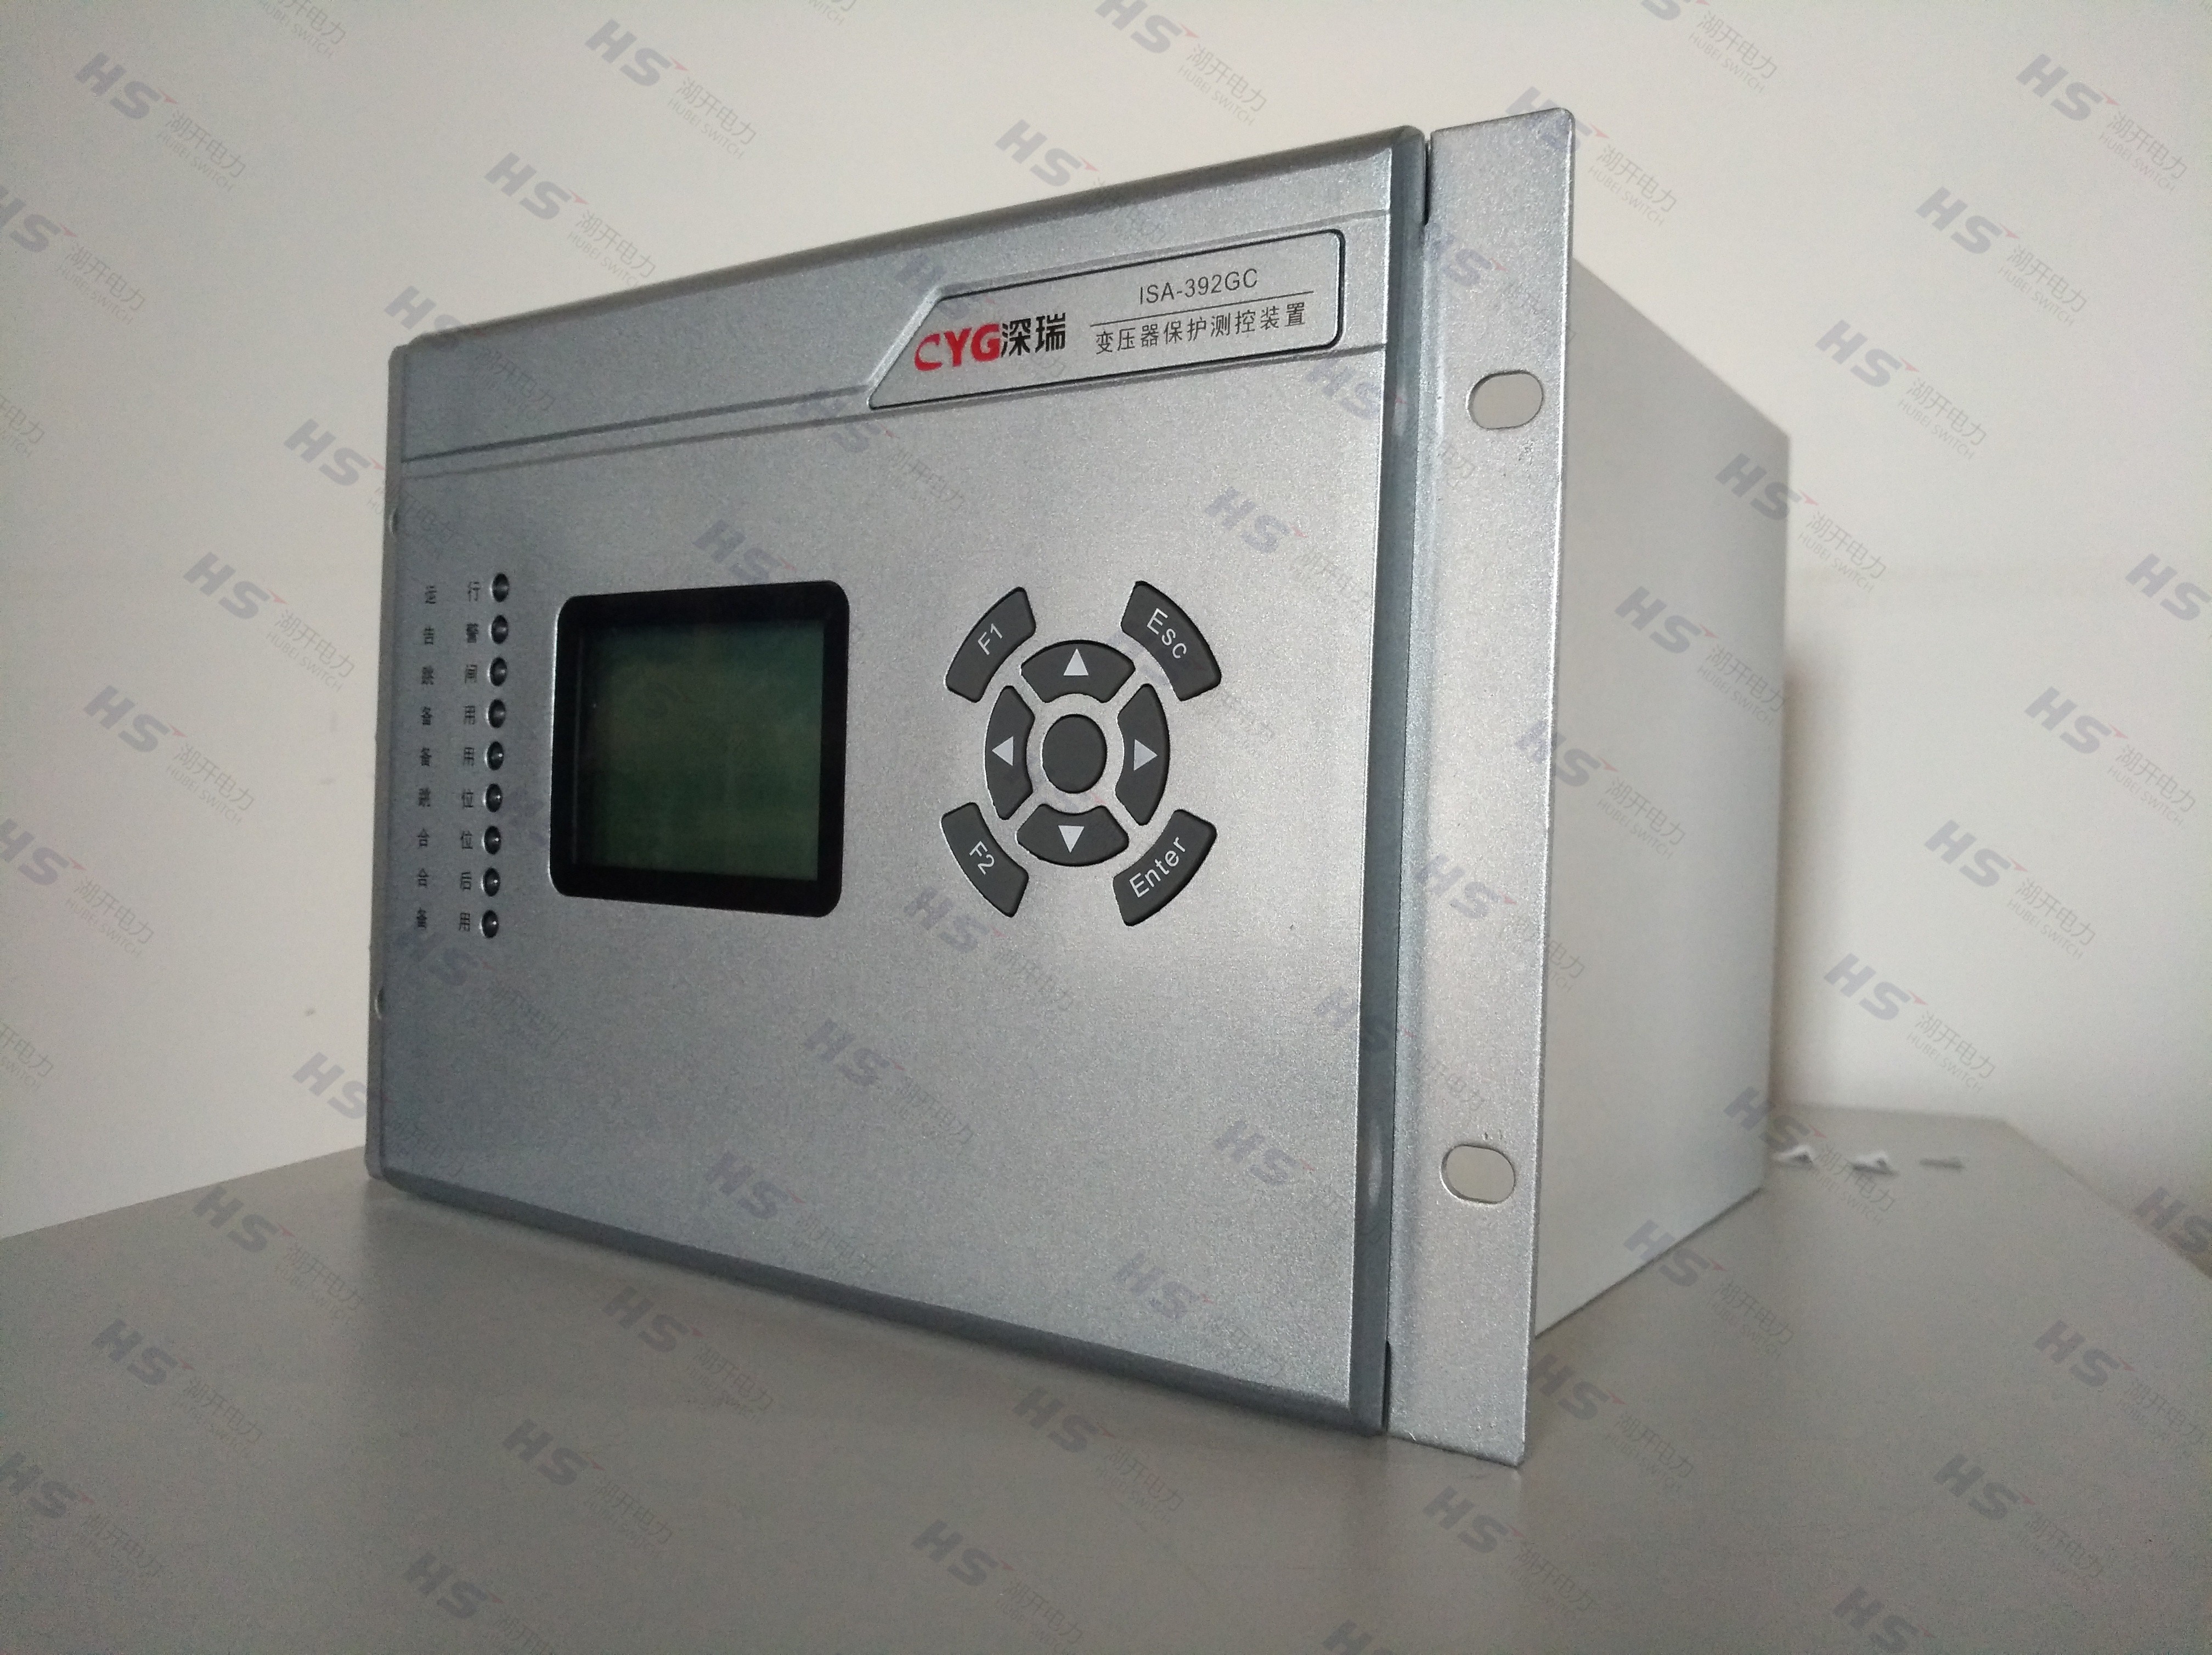 长园深瑞 ISA-392GB 电容器保护测控装置